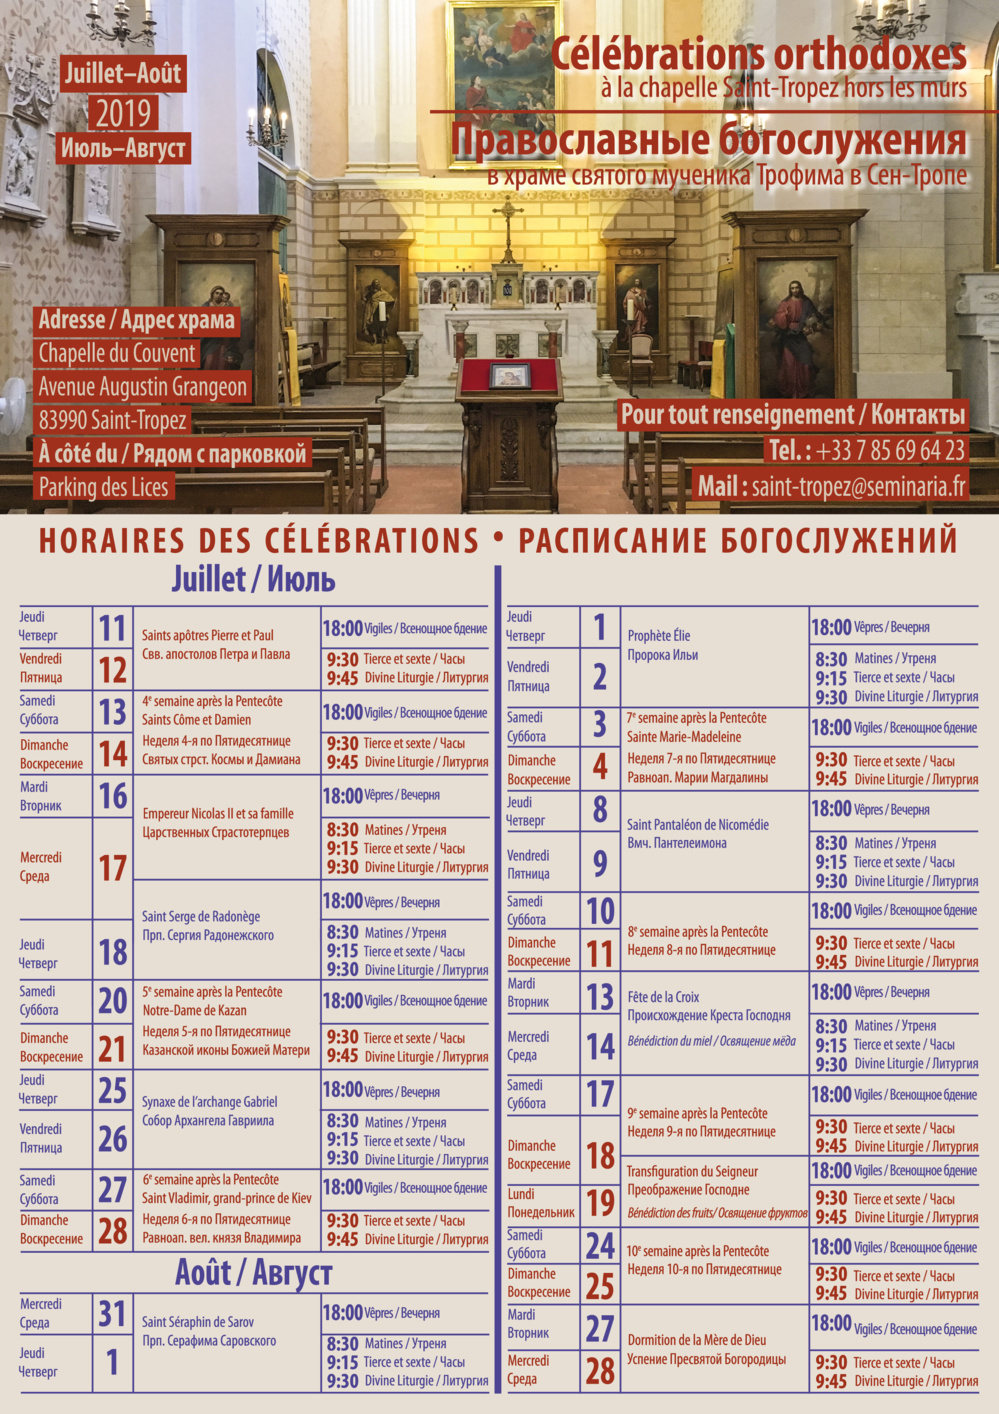 Horaires des célébrations orthodoxes à Saint-Tropez en été 2019